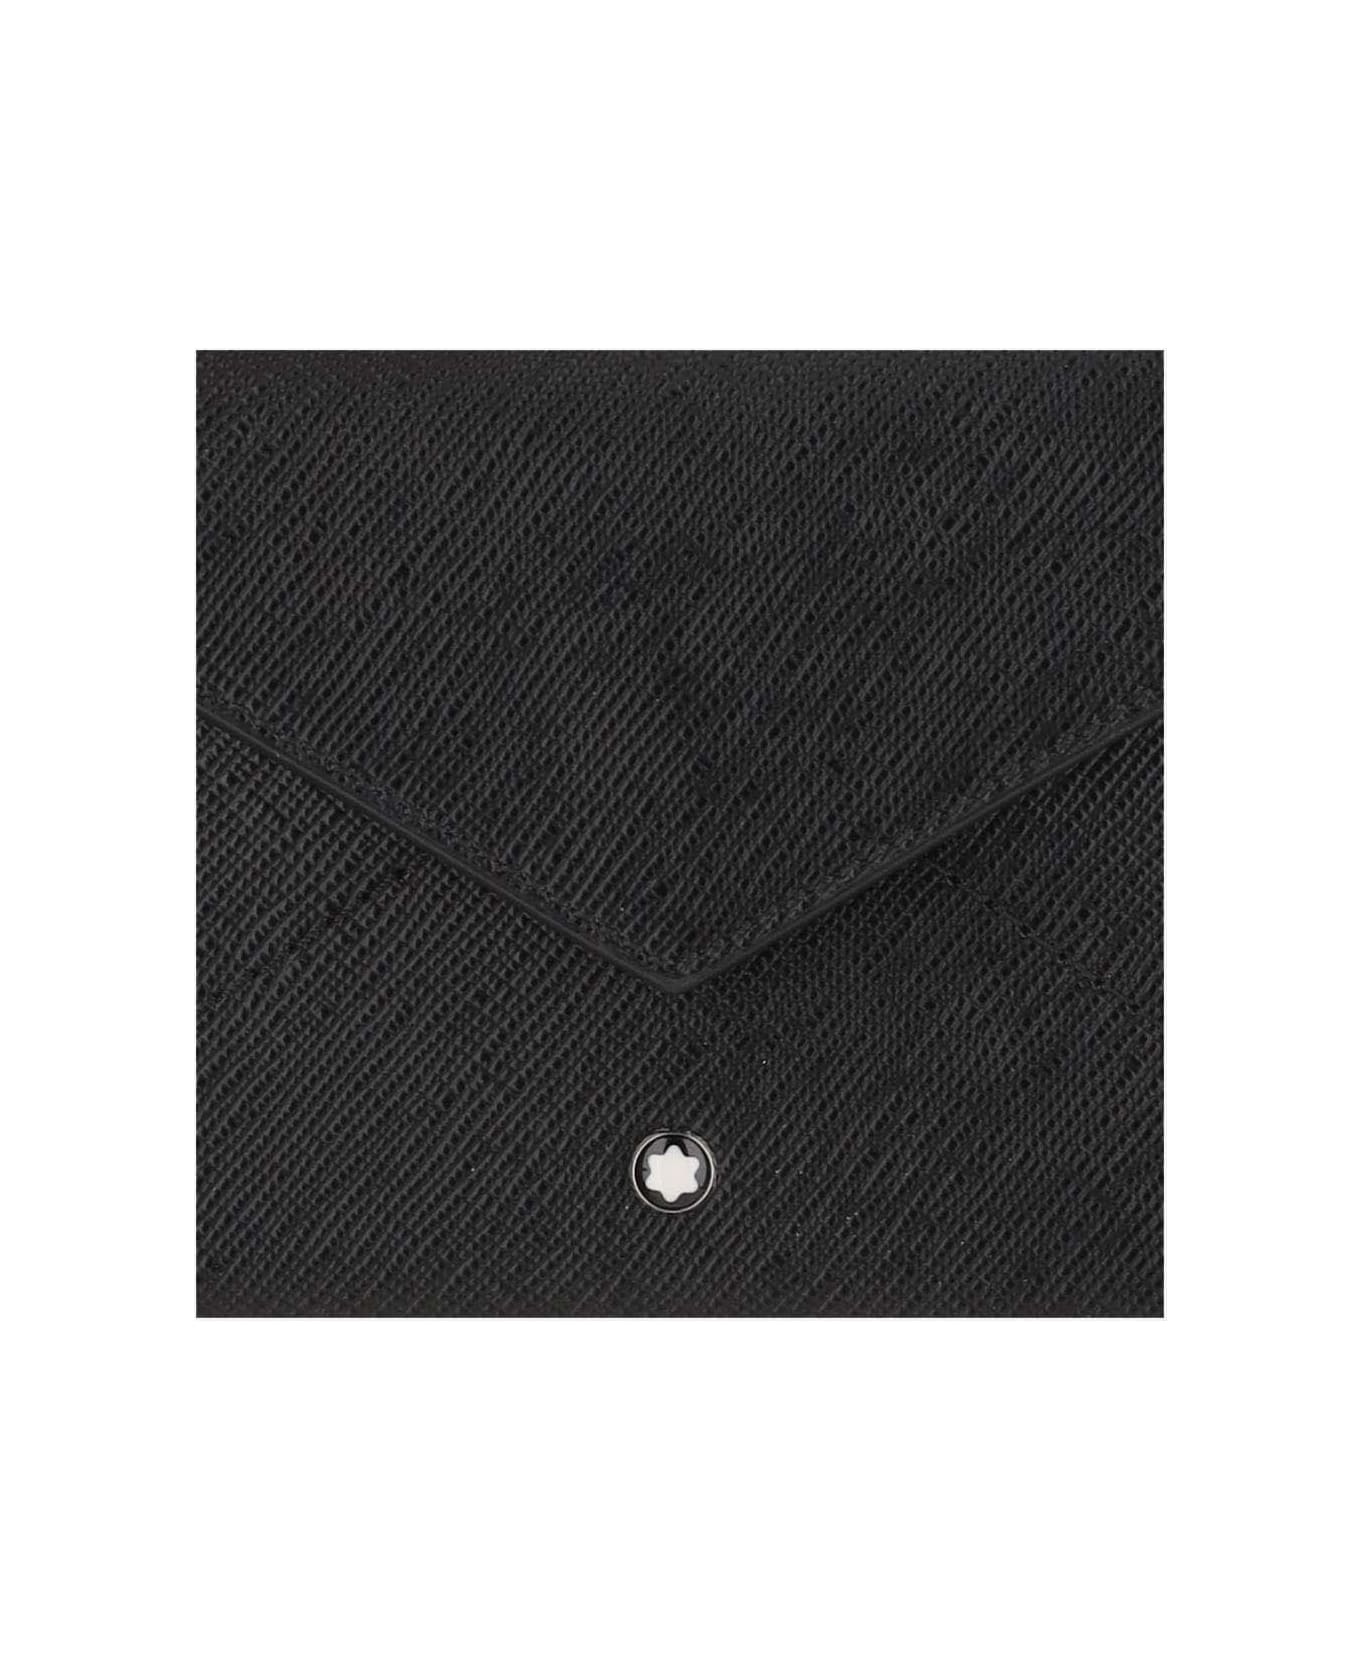 Montblanc Trio Sartorial Wallet 6 Compartments - Black